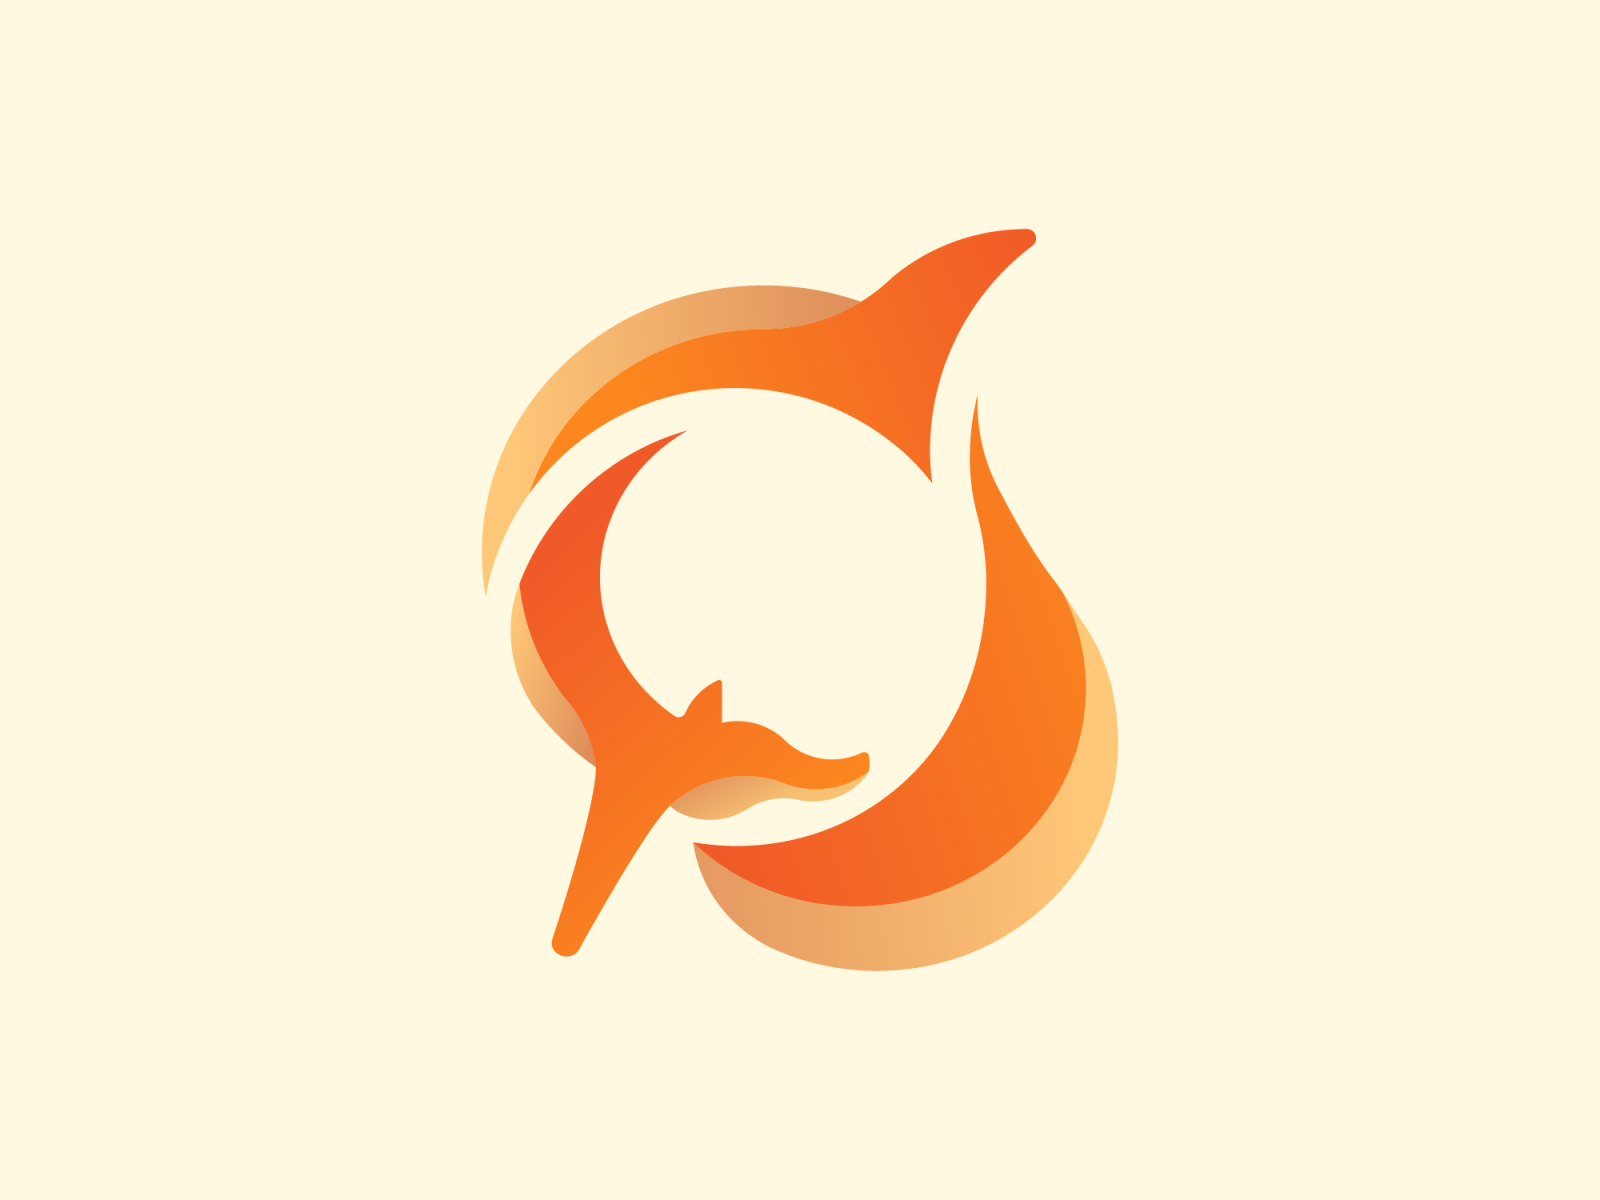 foxback_store_logo.jpg by Rostyslav Tymchenko on Dribbble